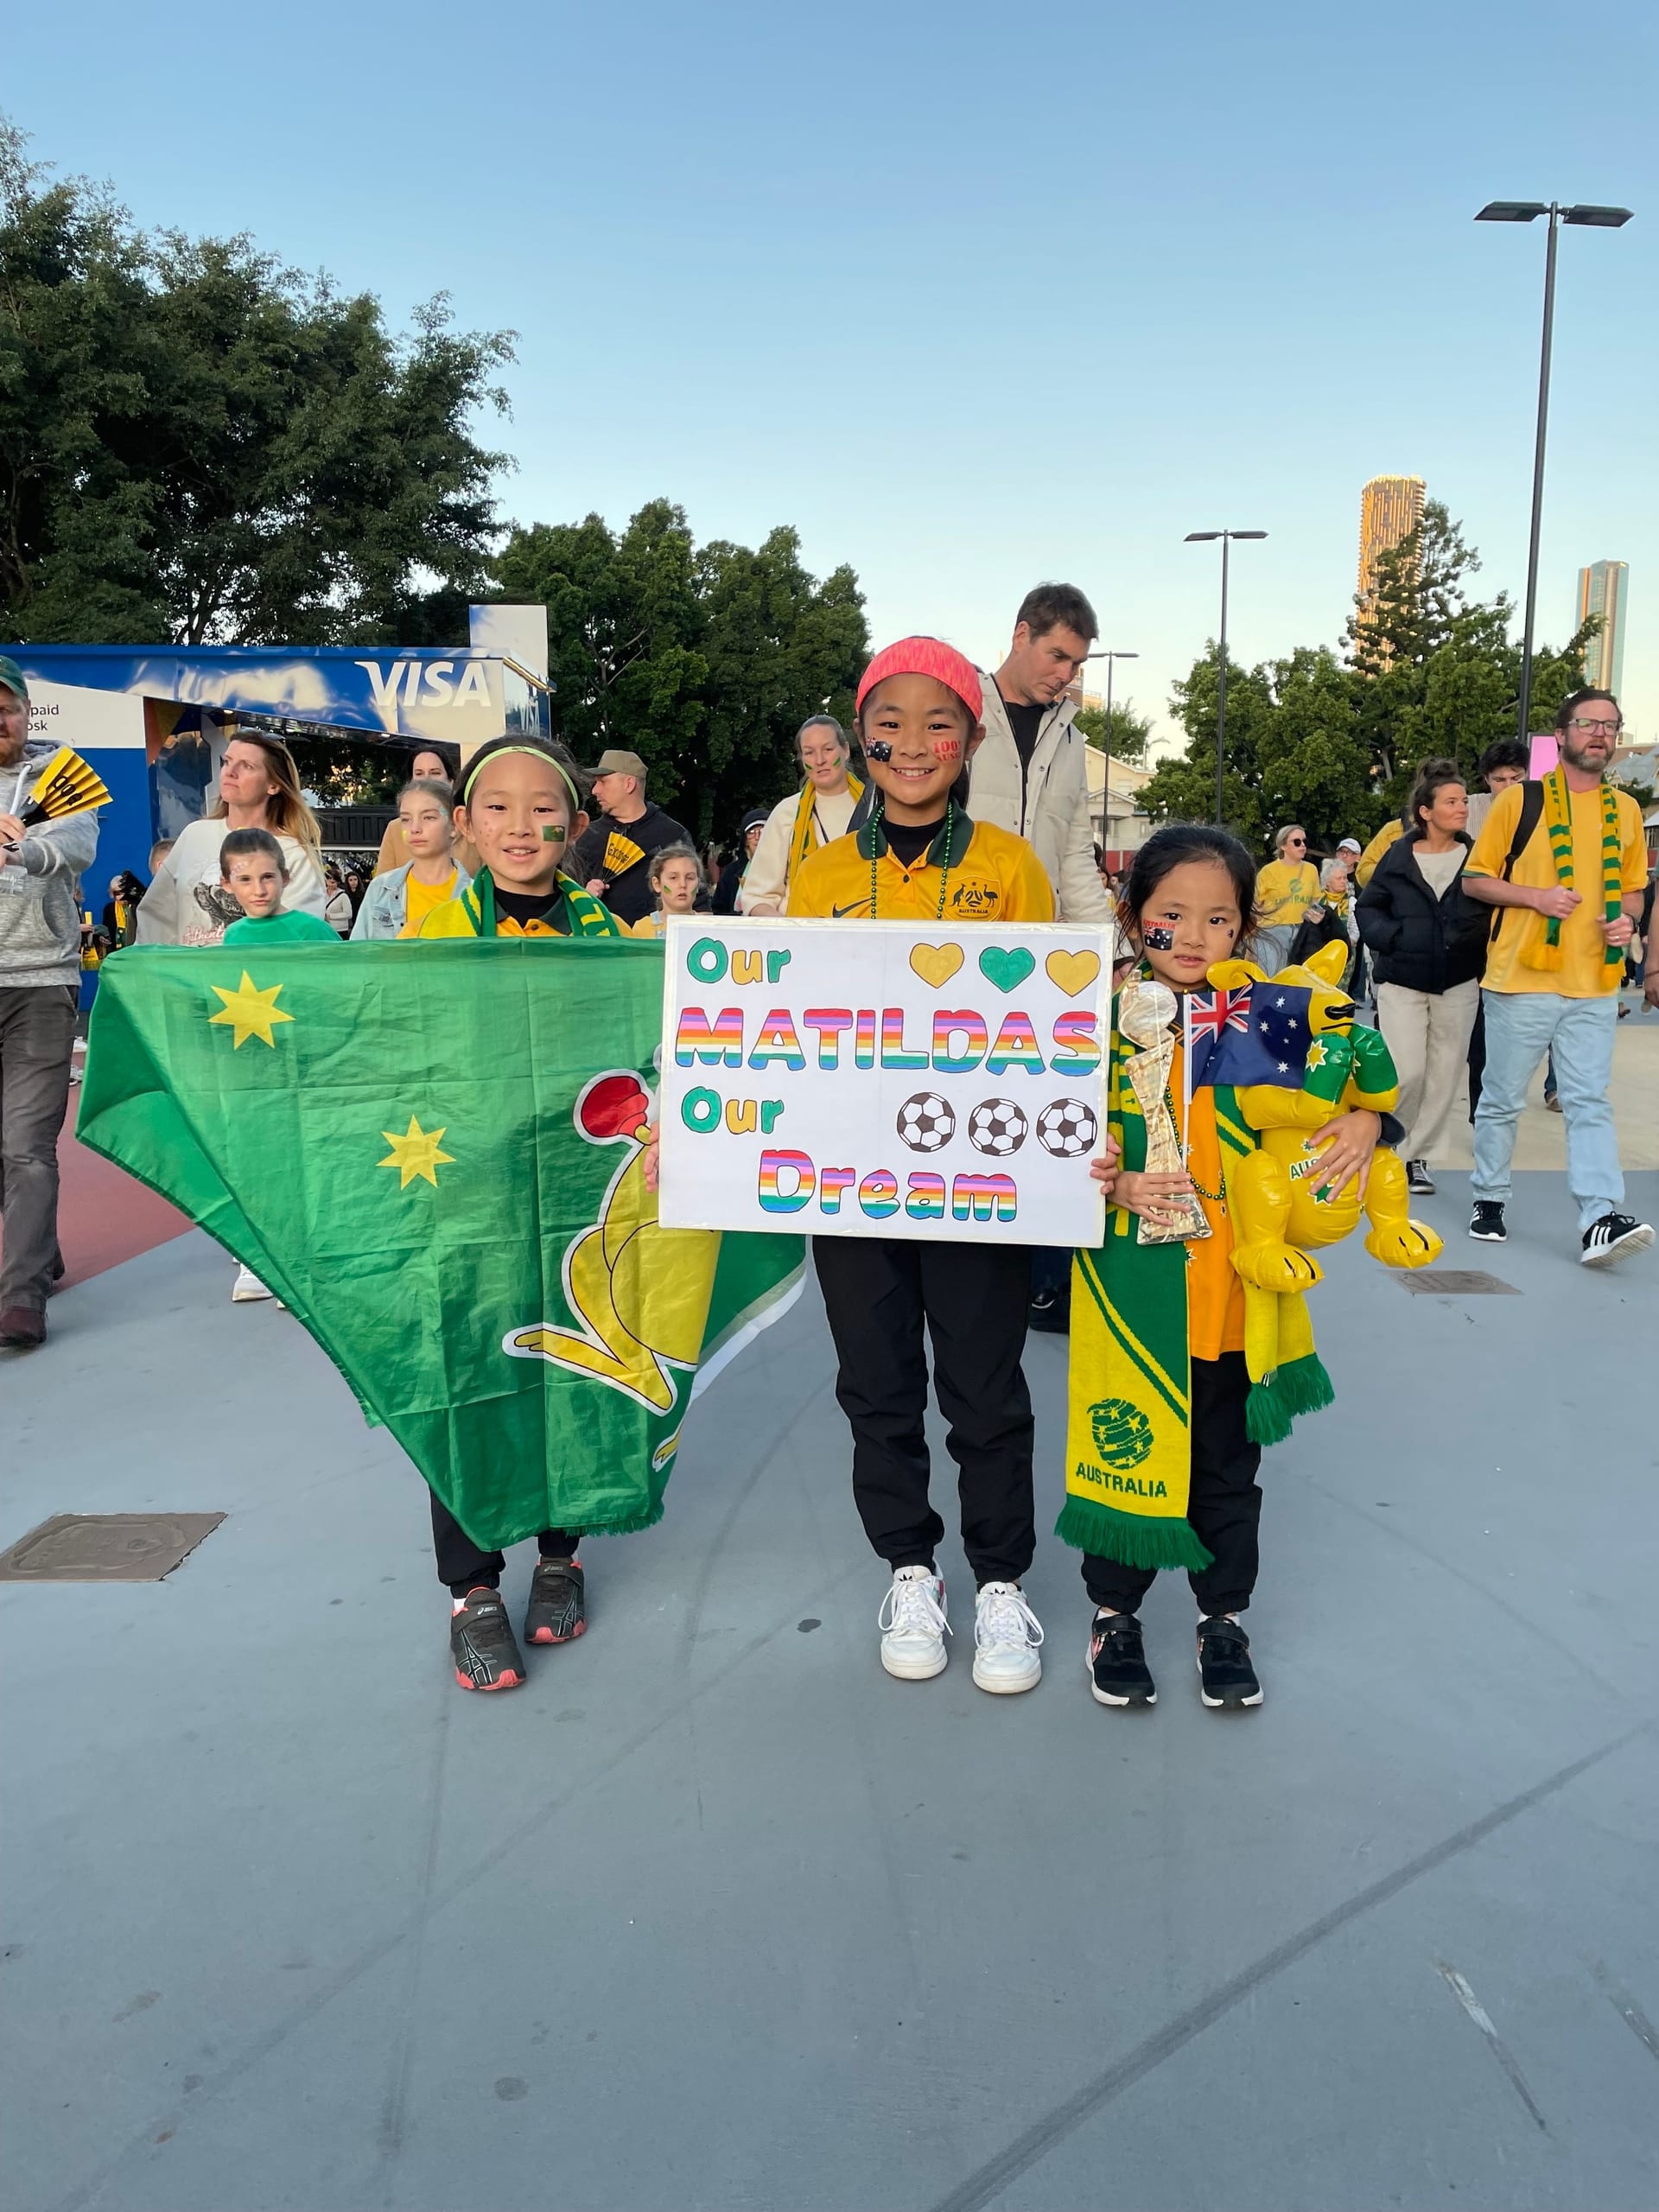 Junge Fans der "Matildas" in Brisbane.